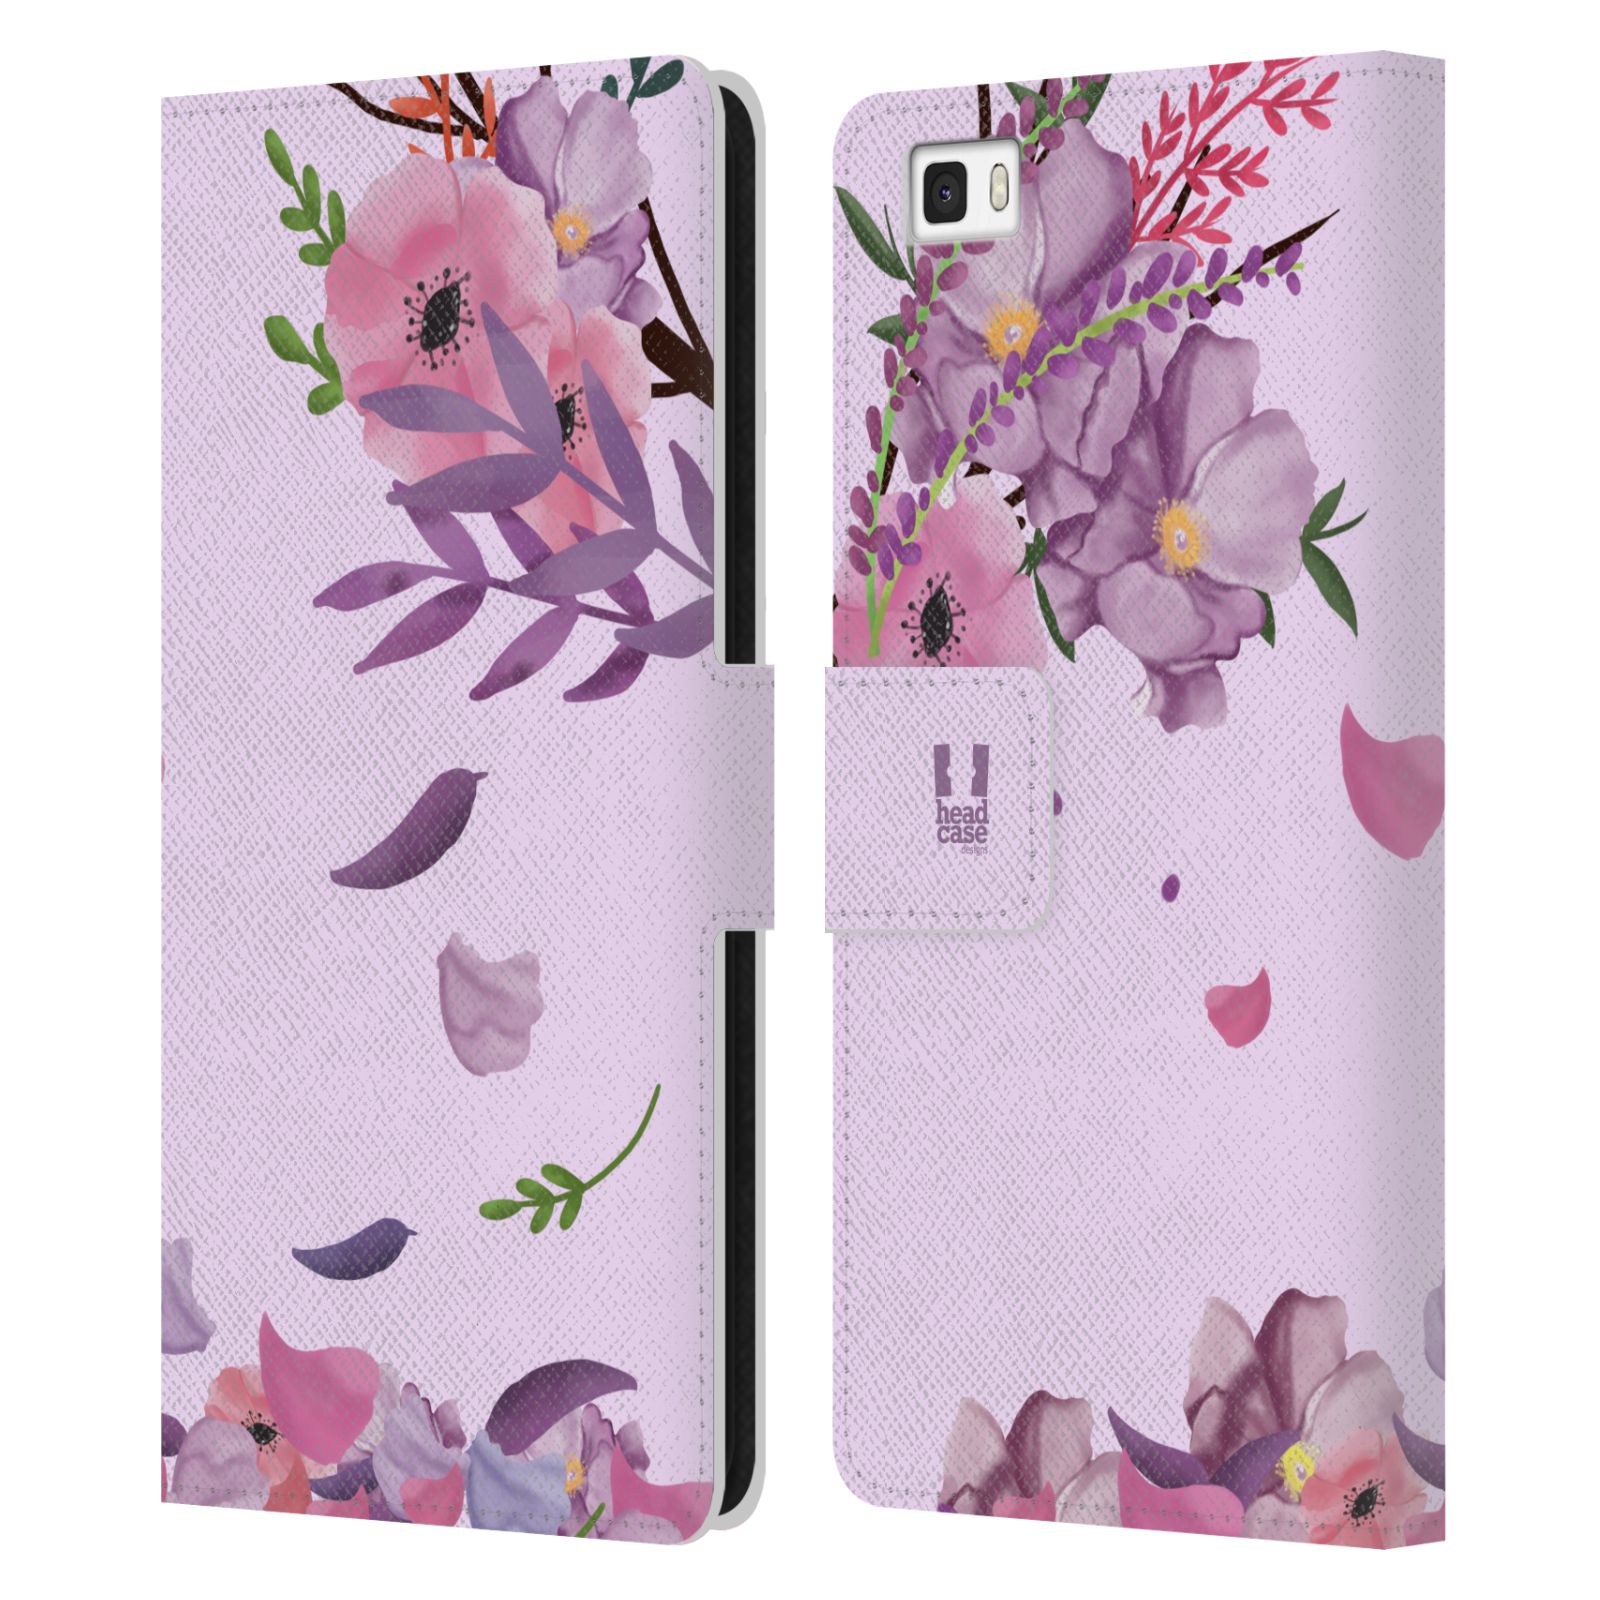 Pouzdro na mobil Huawei P8 LITE - HEAD CASE - Rozkvetlé růže a listy růžová